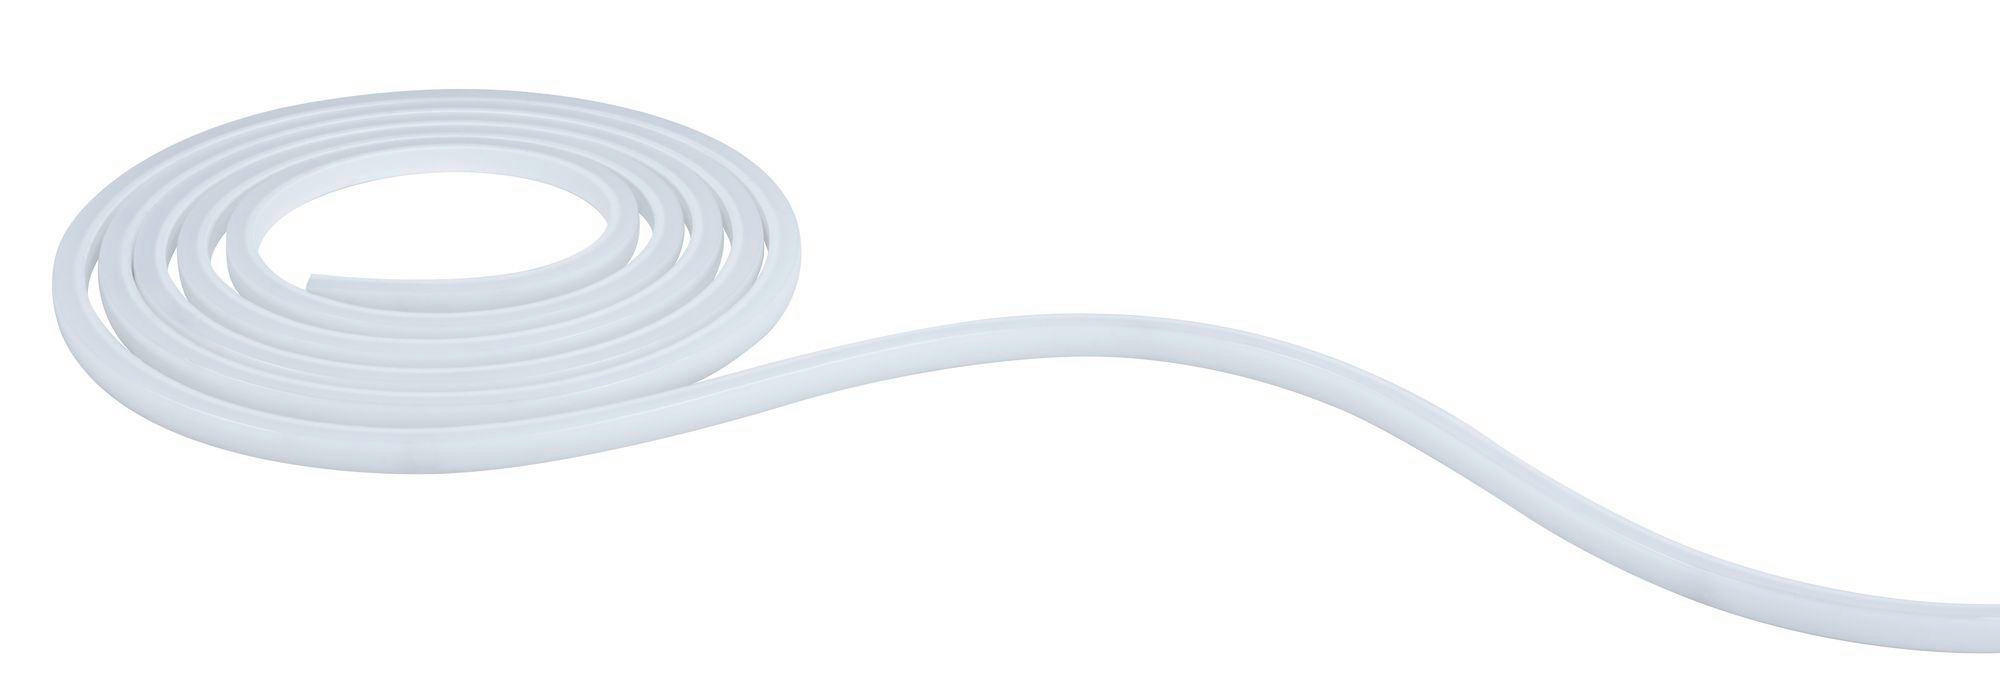 LED-STRIP 300 cm  - Weiß, Basics, Kunststoff (300cm) - Paulmann